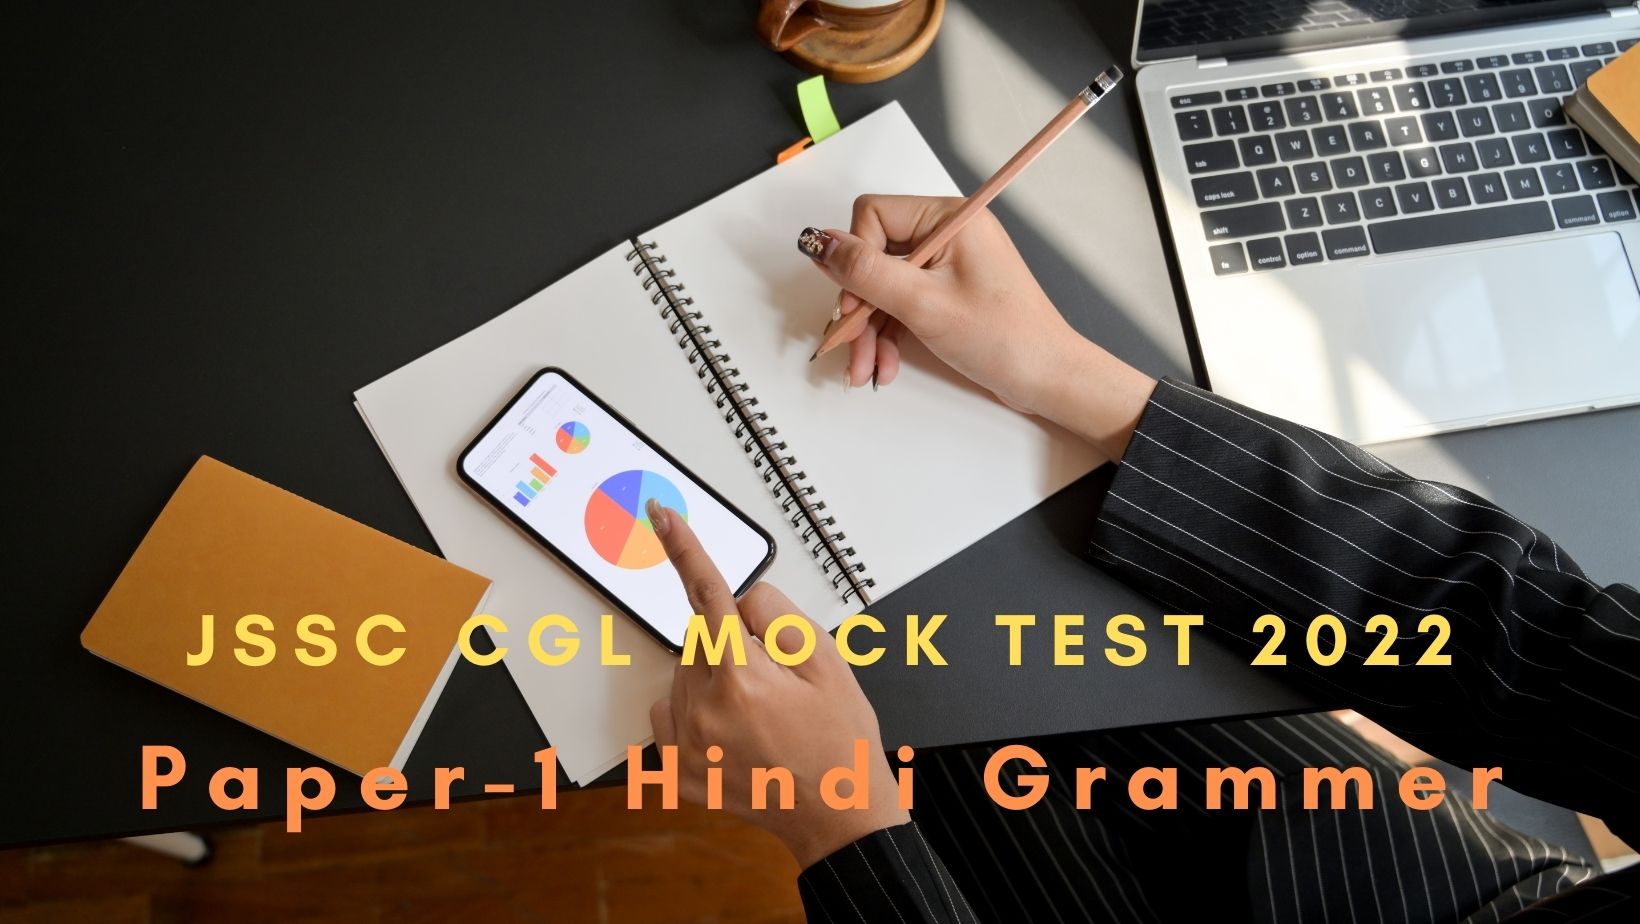 JSSC CGL Mock Test Paper 1 Hindi Grammer Online Test 2022